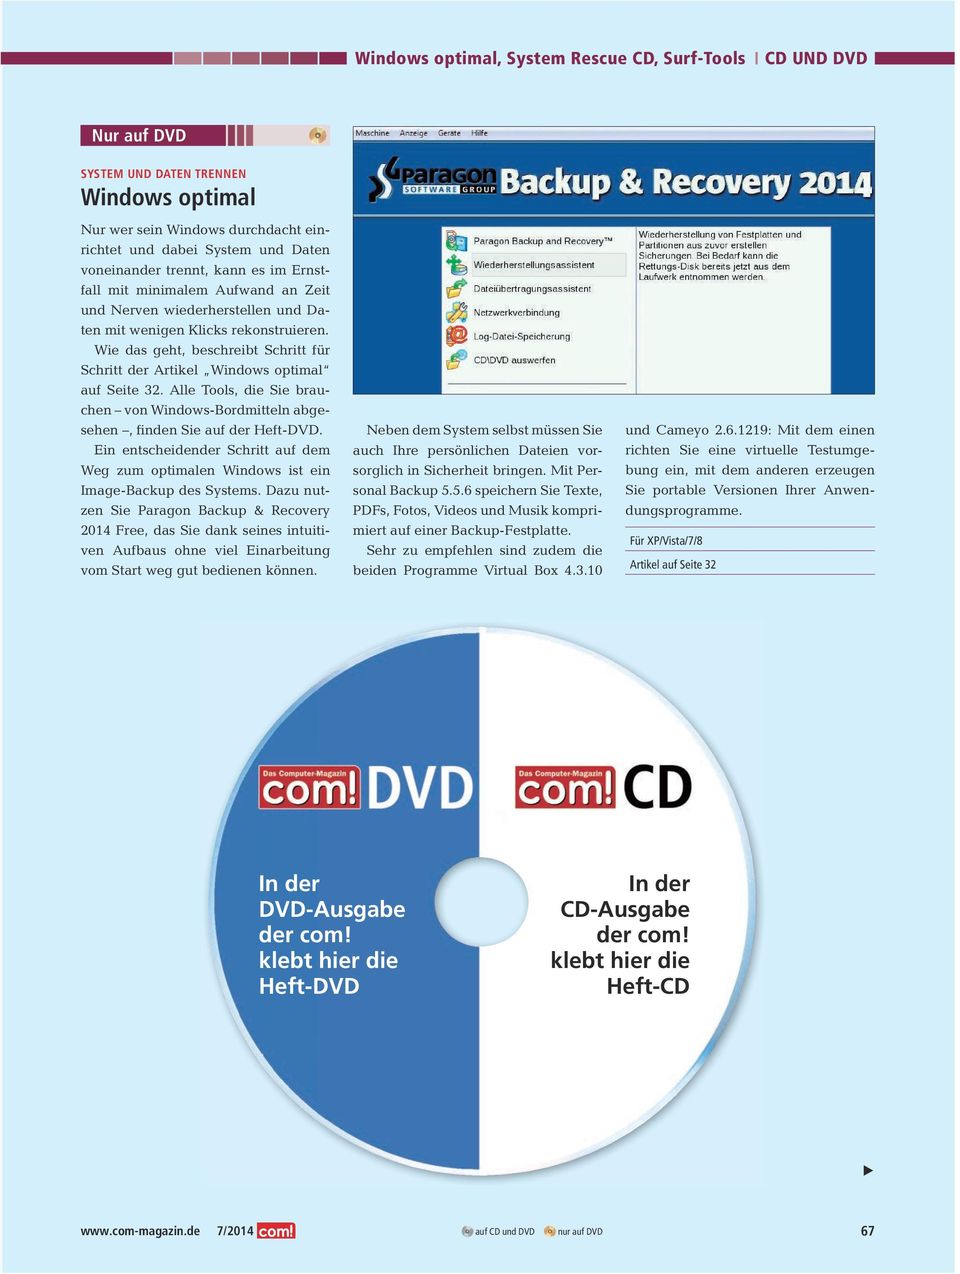 Alle Tools, die Sie brauchen von Windows-Bordmitteln abgesehen, finden Sie auf der Heft-DVD. Ein entscheidender Schritt auf dem Weg zum optimalen Windows ist ein Image-Backup des Systems.